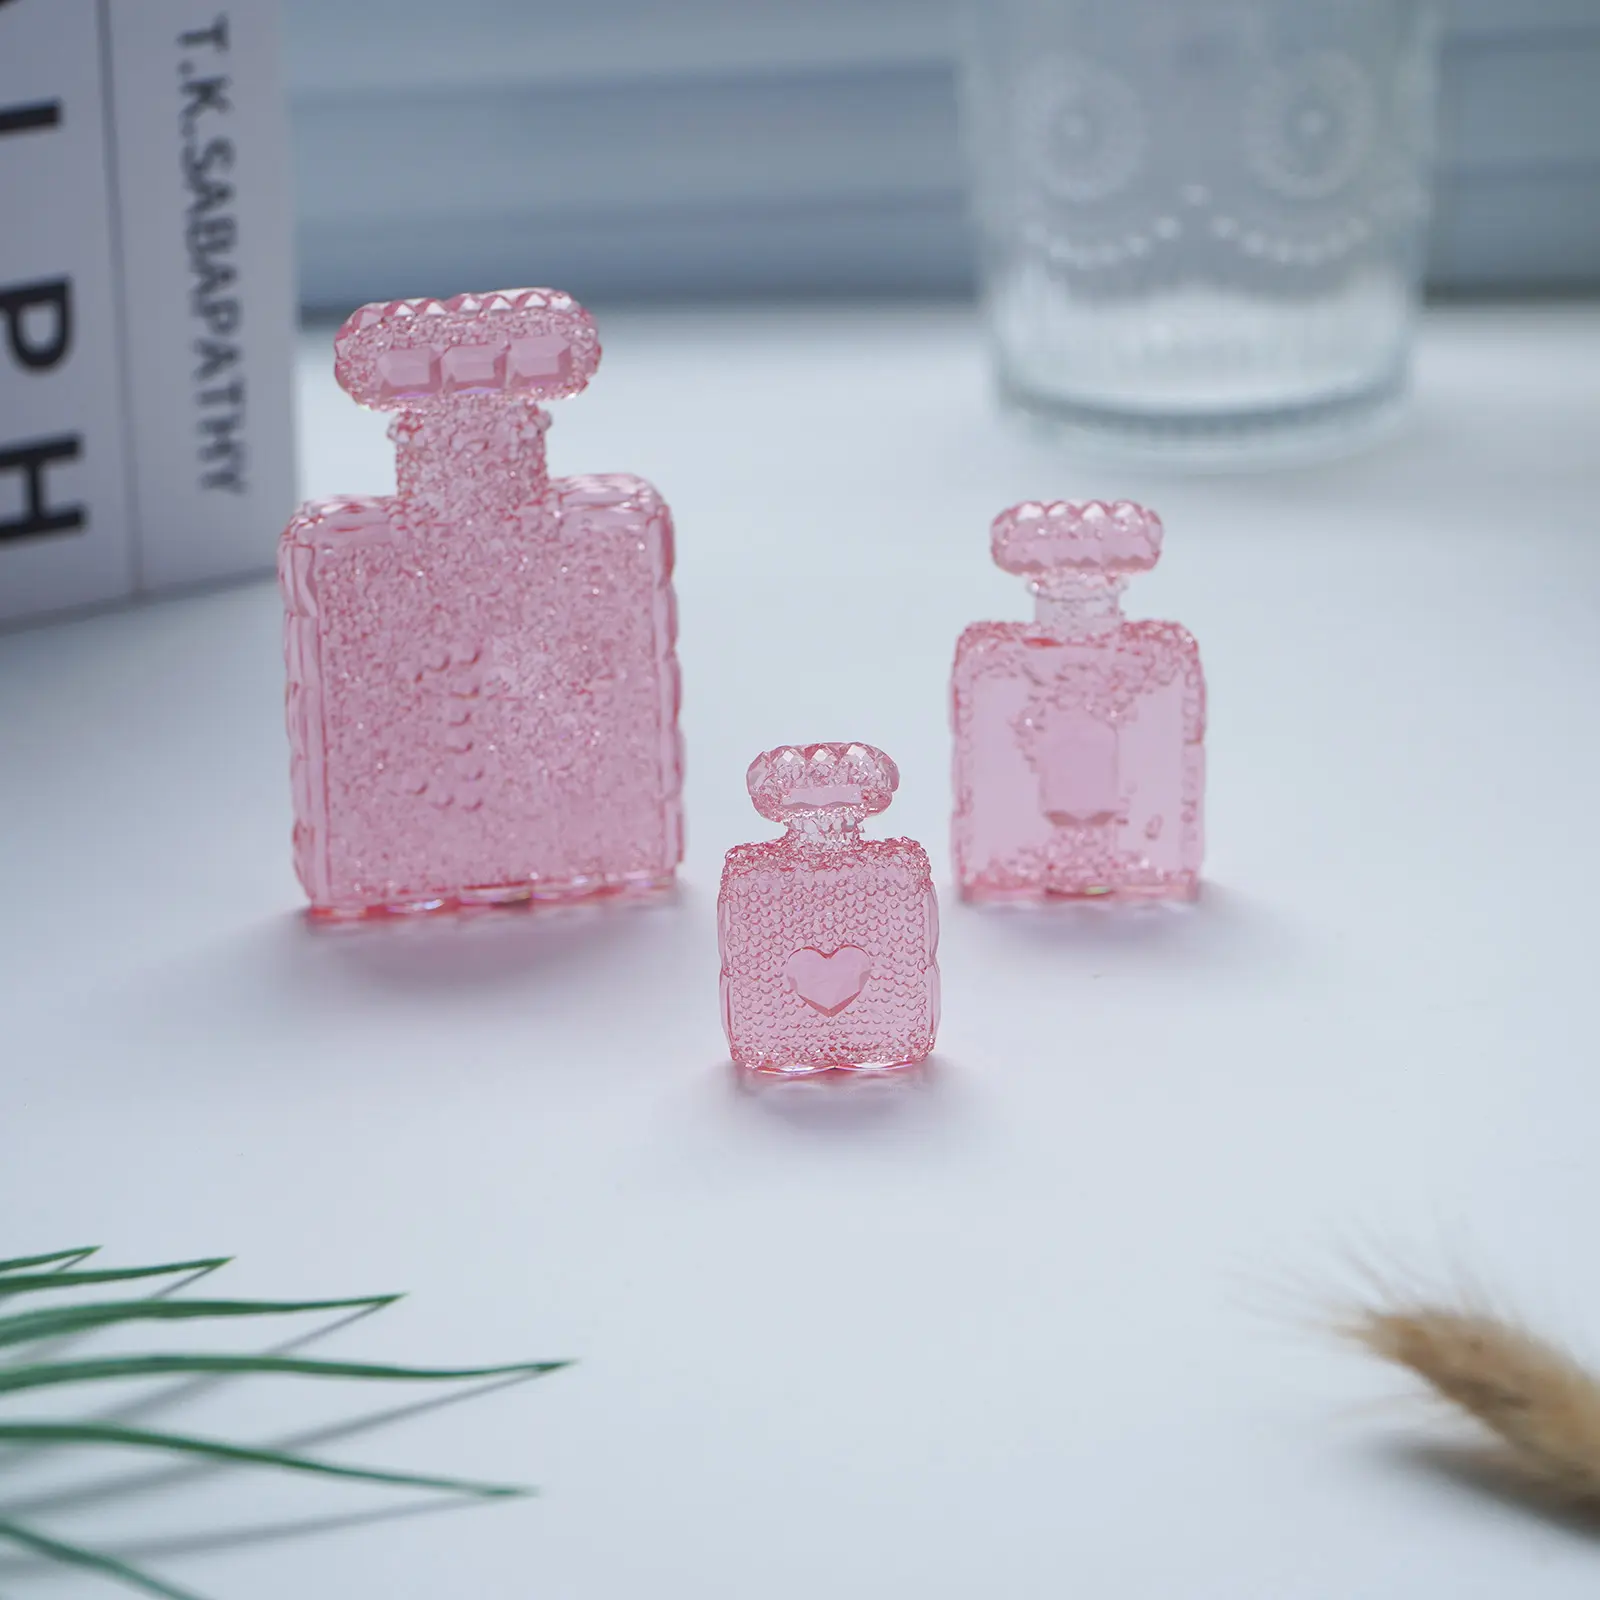 Perfume Figurine Miniature Garrafa Home Decor Ornamentos Doll House Toy Craft Projetos 2 PCS Em Um Conjunto